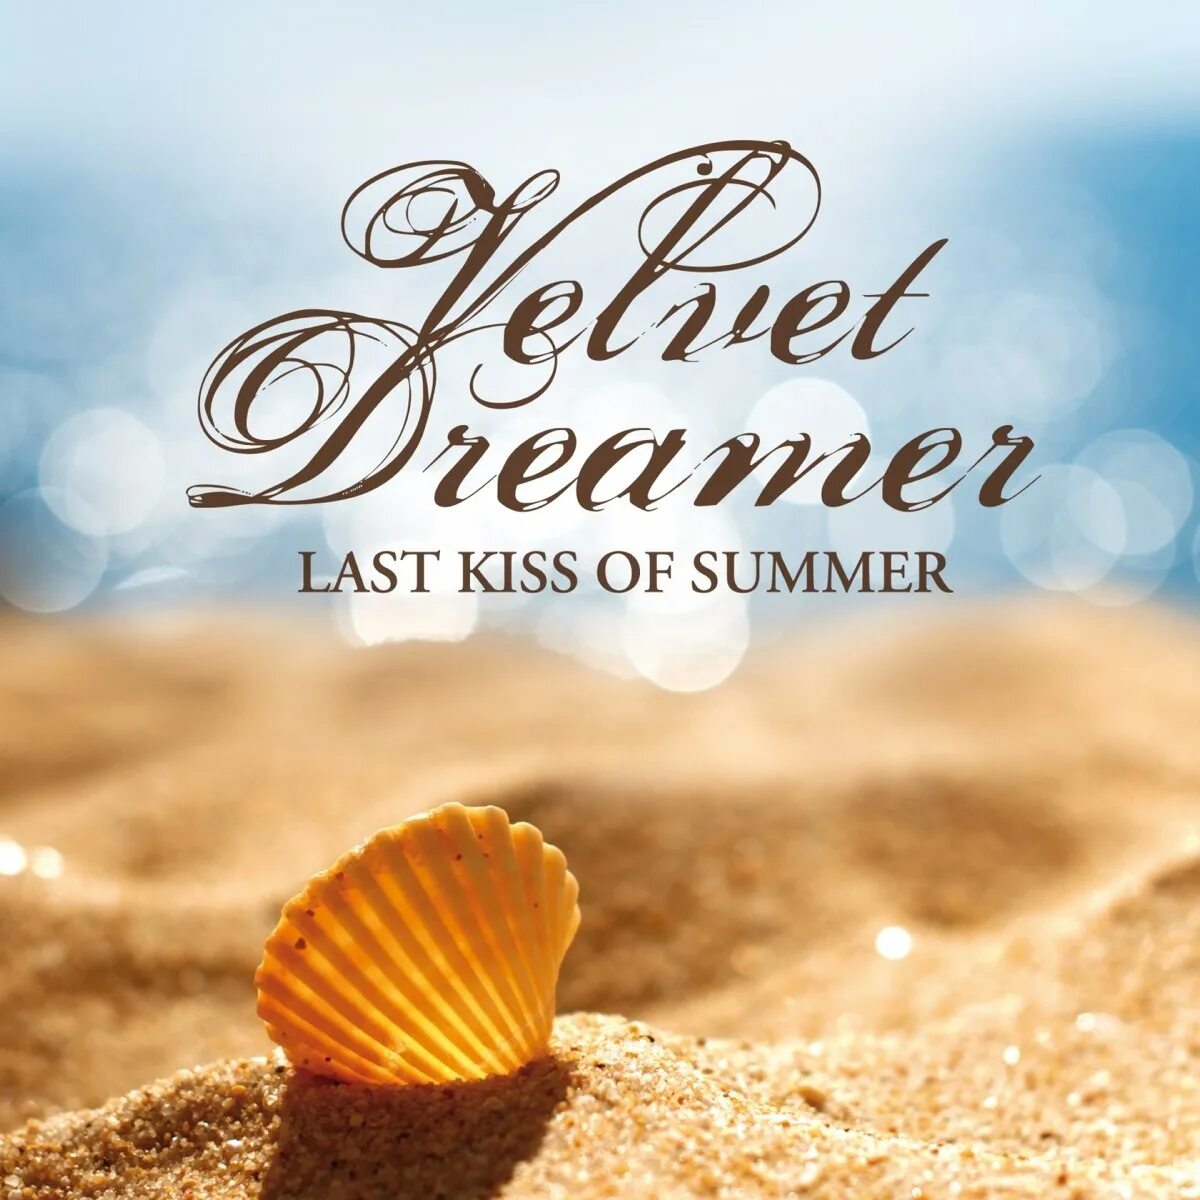 Velvet Dreamer. Velvet Dreamer обложка. Velvet Dreamer исполнители. Velvet Dreamer Deep Dive. Summer kiss